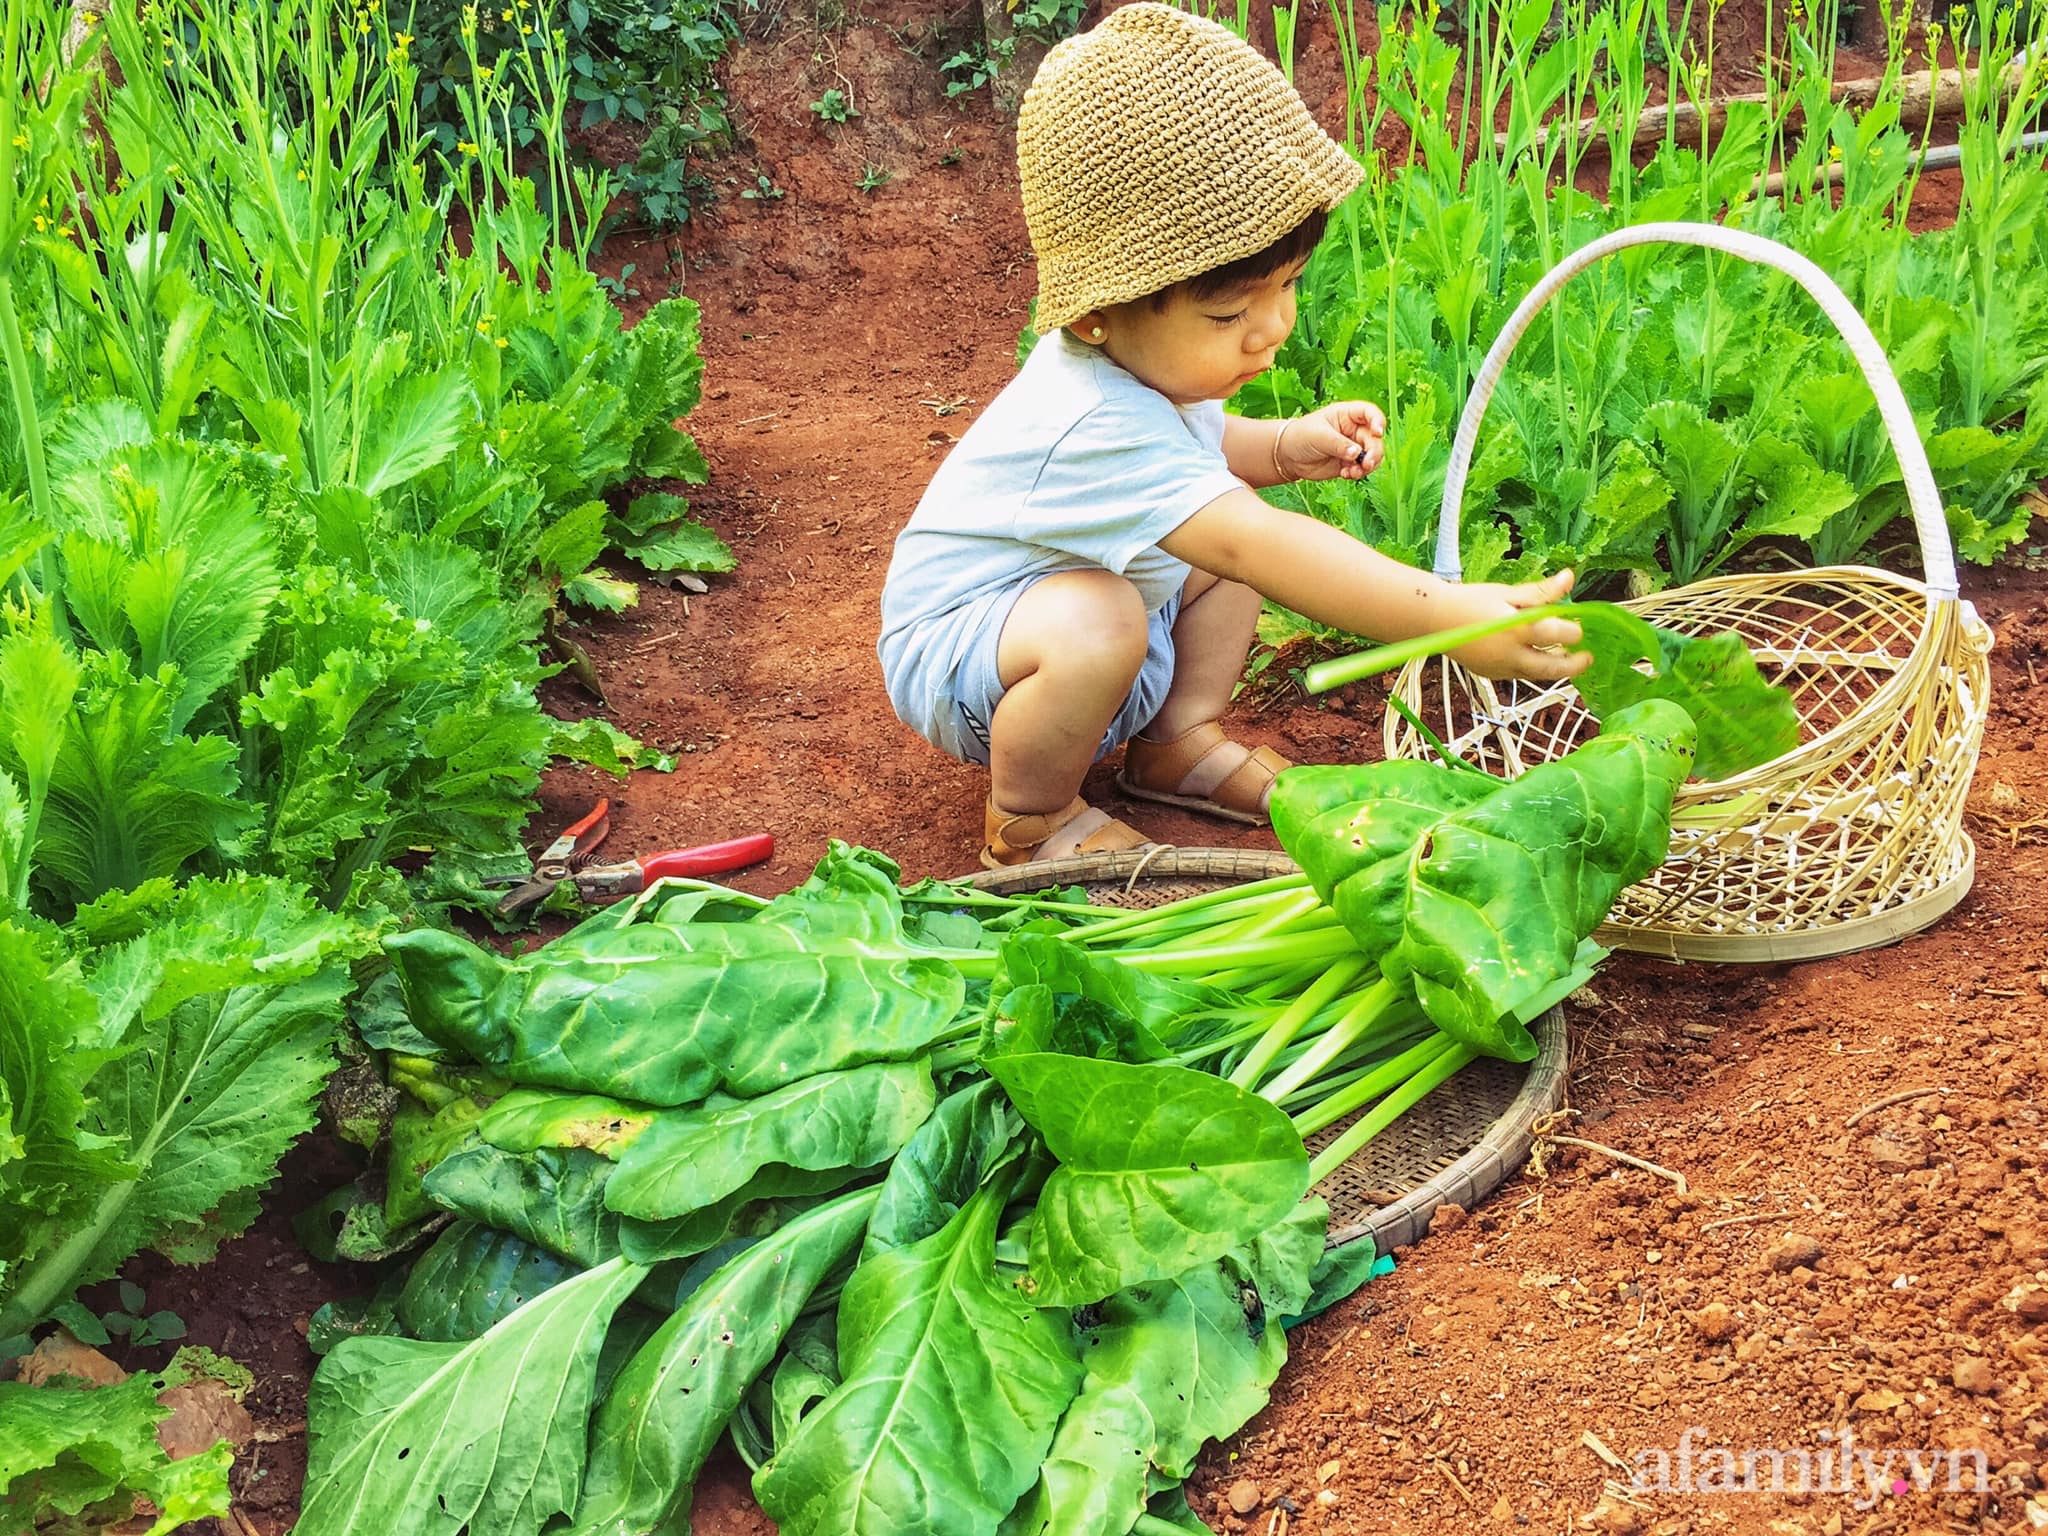 Khu vườn quanh năm tốt tươi rau quả sạch của mẹ mệnh Hỏa trồng cho con trai thưởng thức ở Đắk Lắk - Ảnh 6.